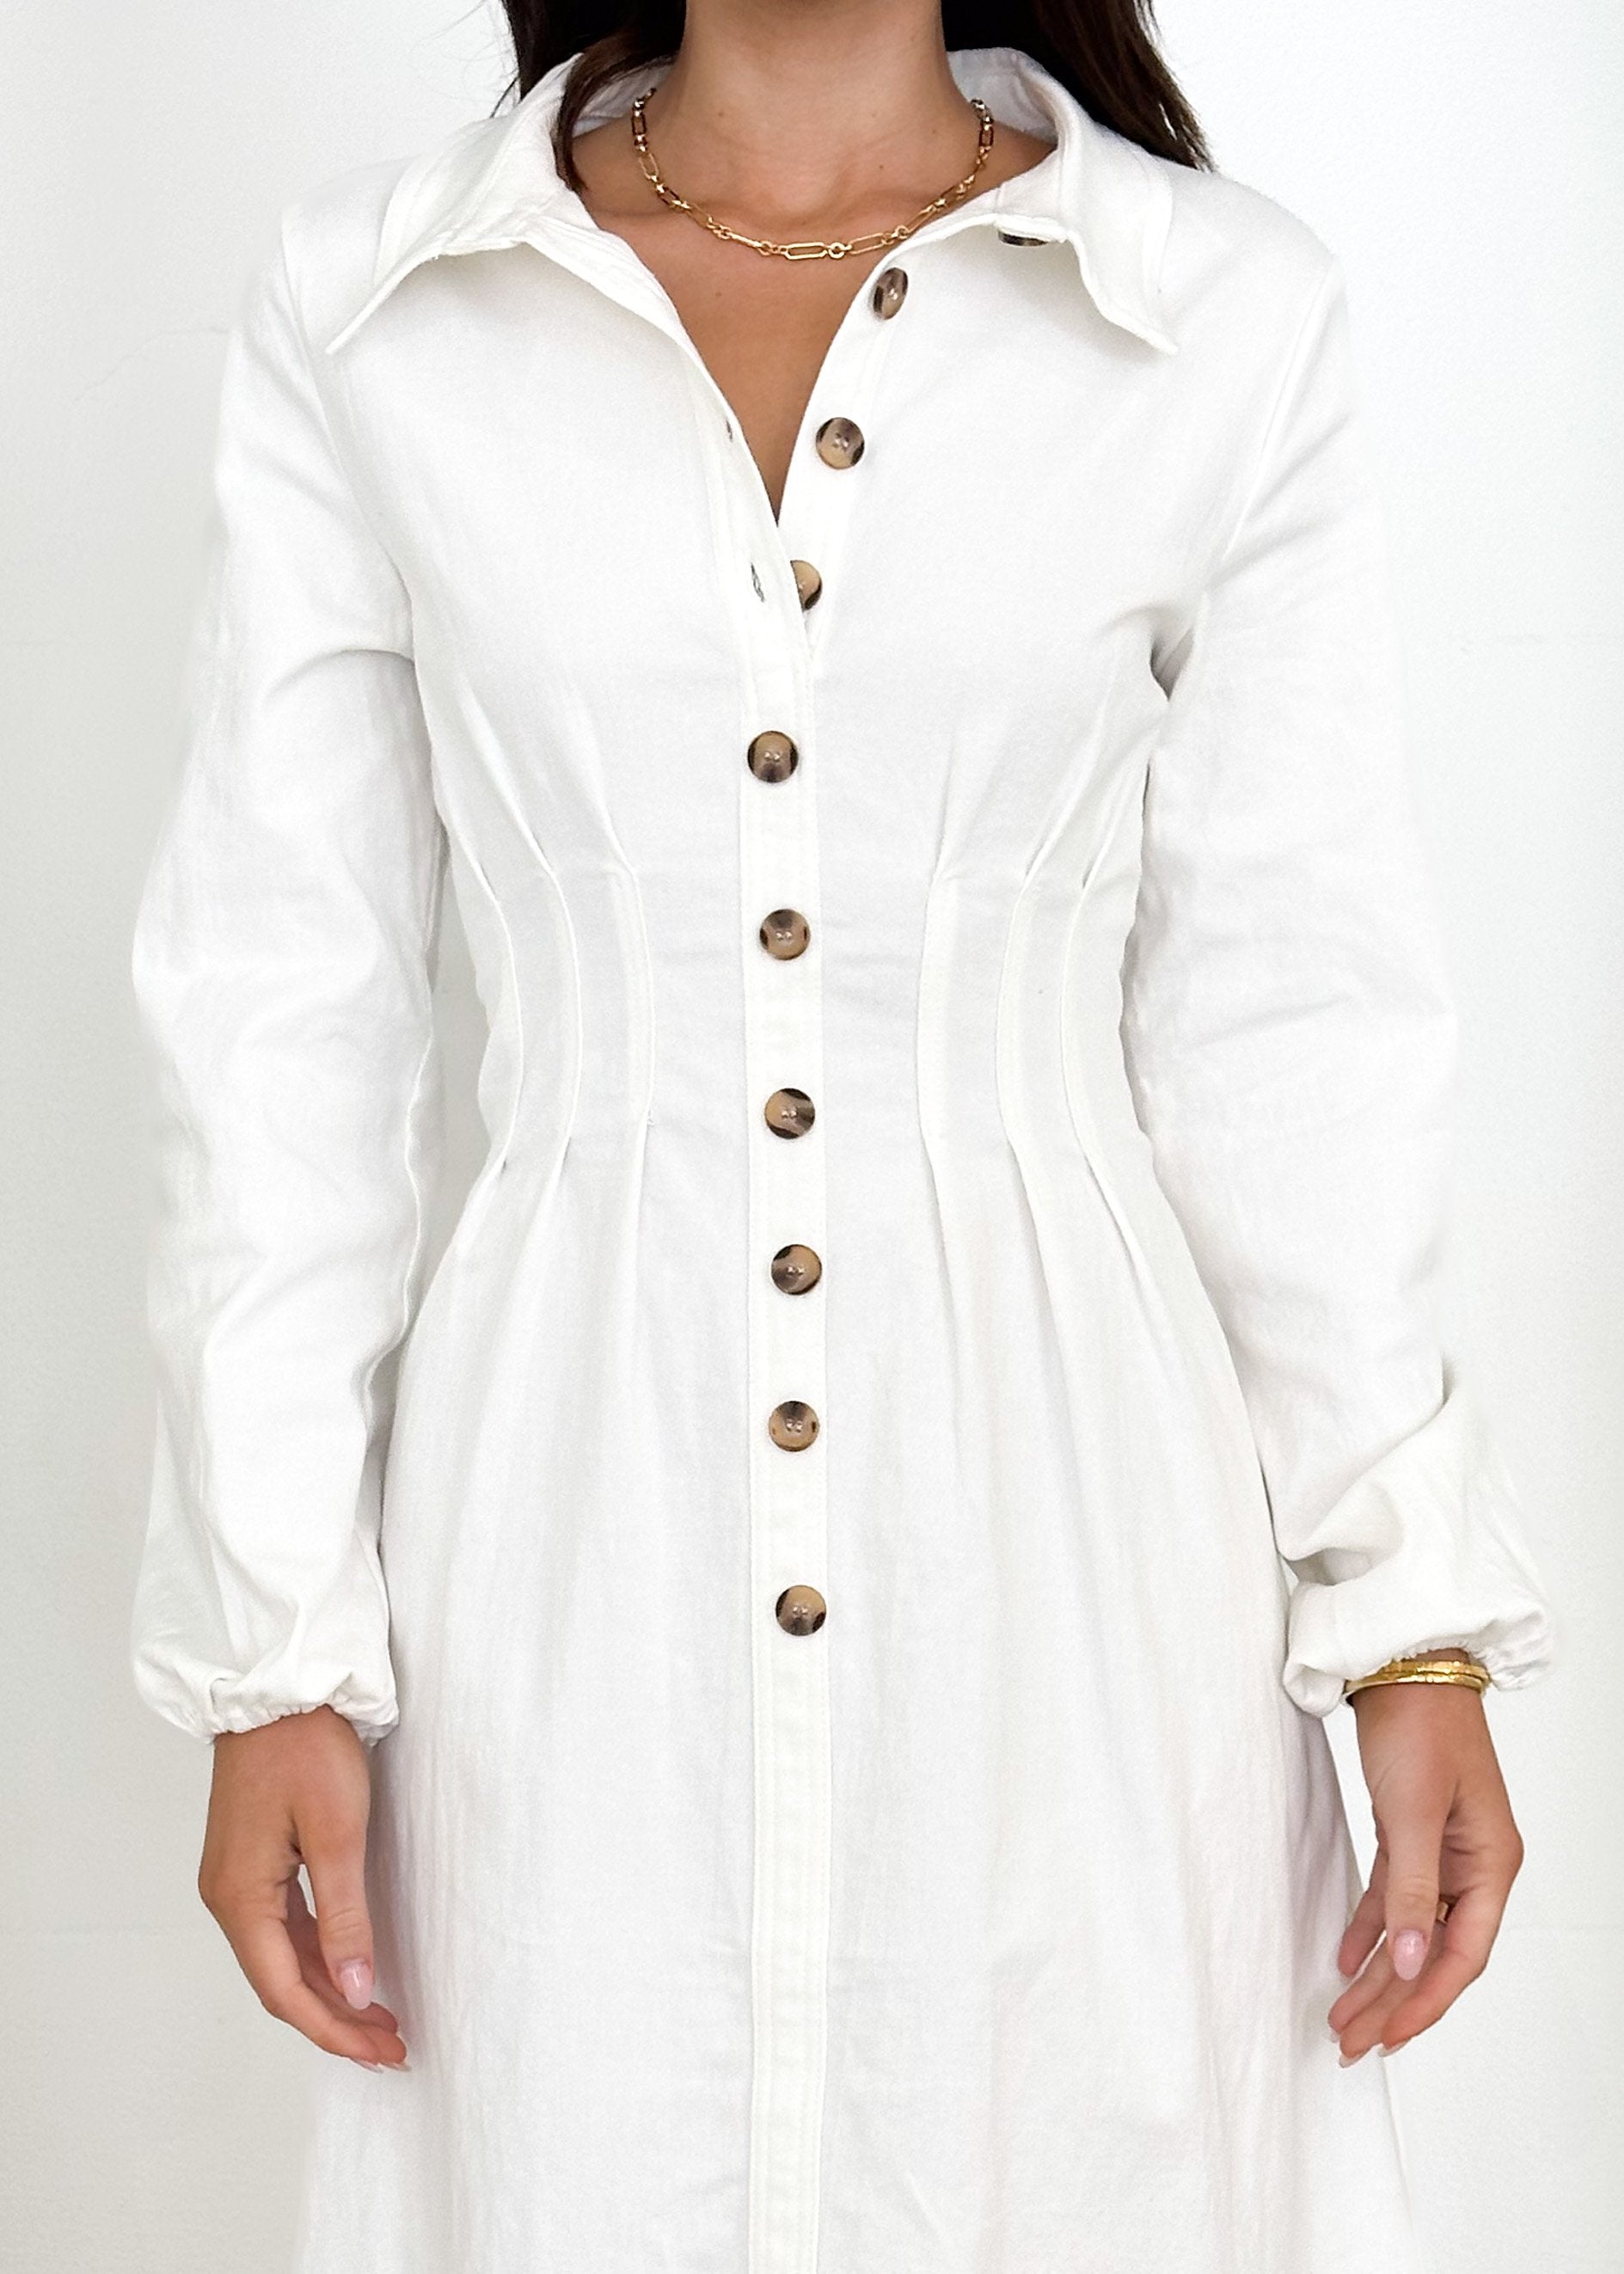 Chrissly Midi Dress - White